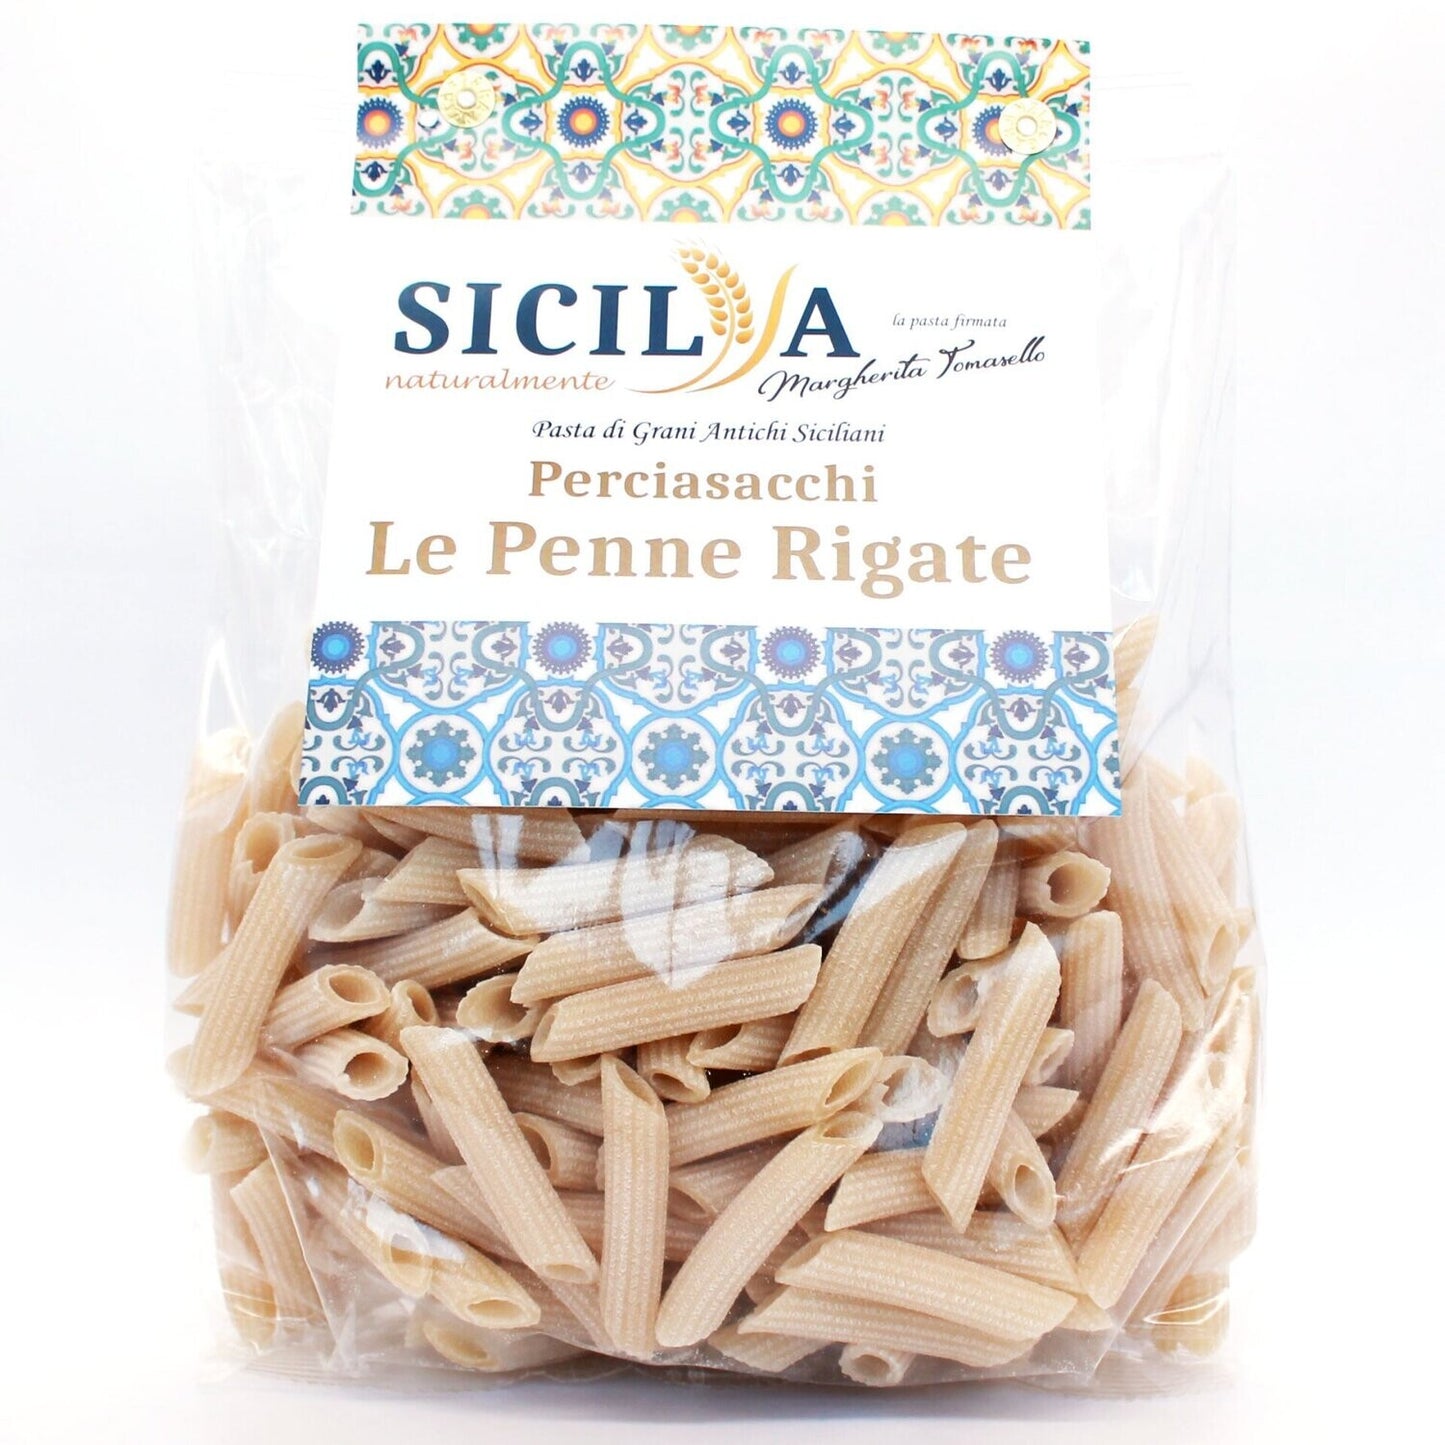 Pasta Penne Rigate di Grani Antichi Siciliani Perciasacchi - Sicilia Naturalmente